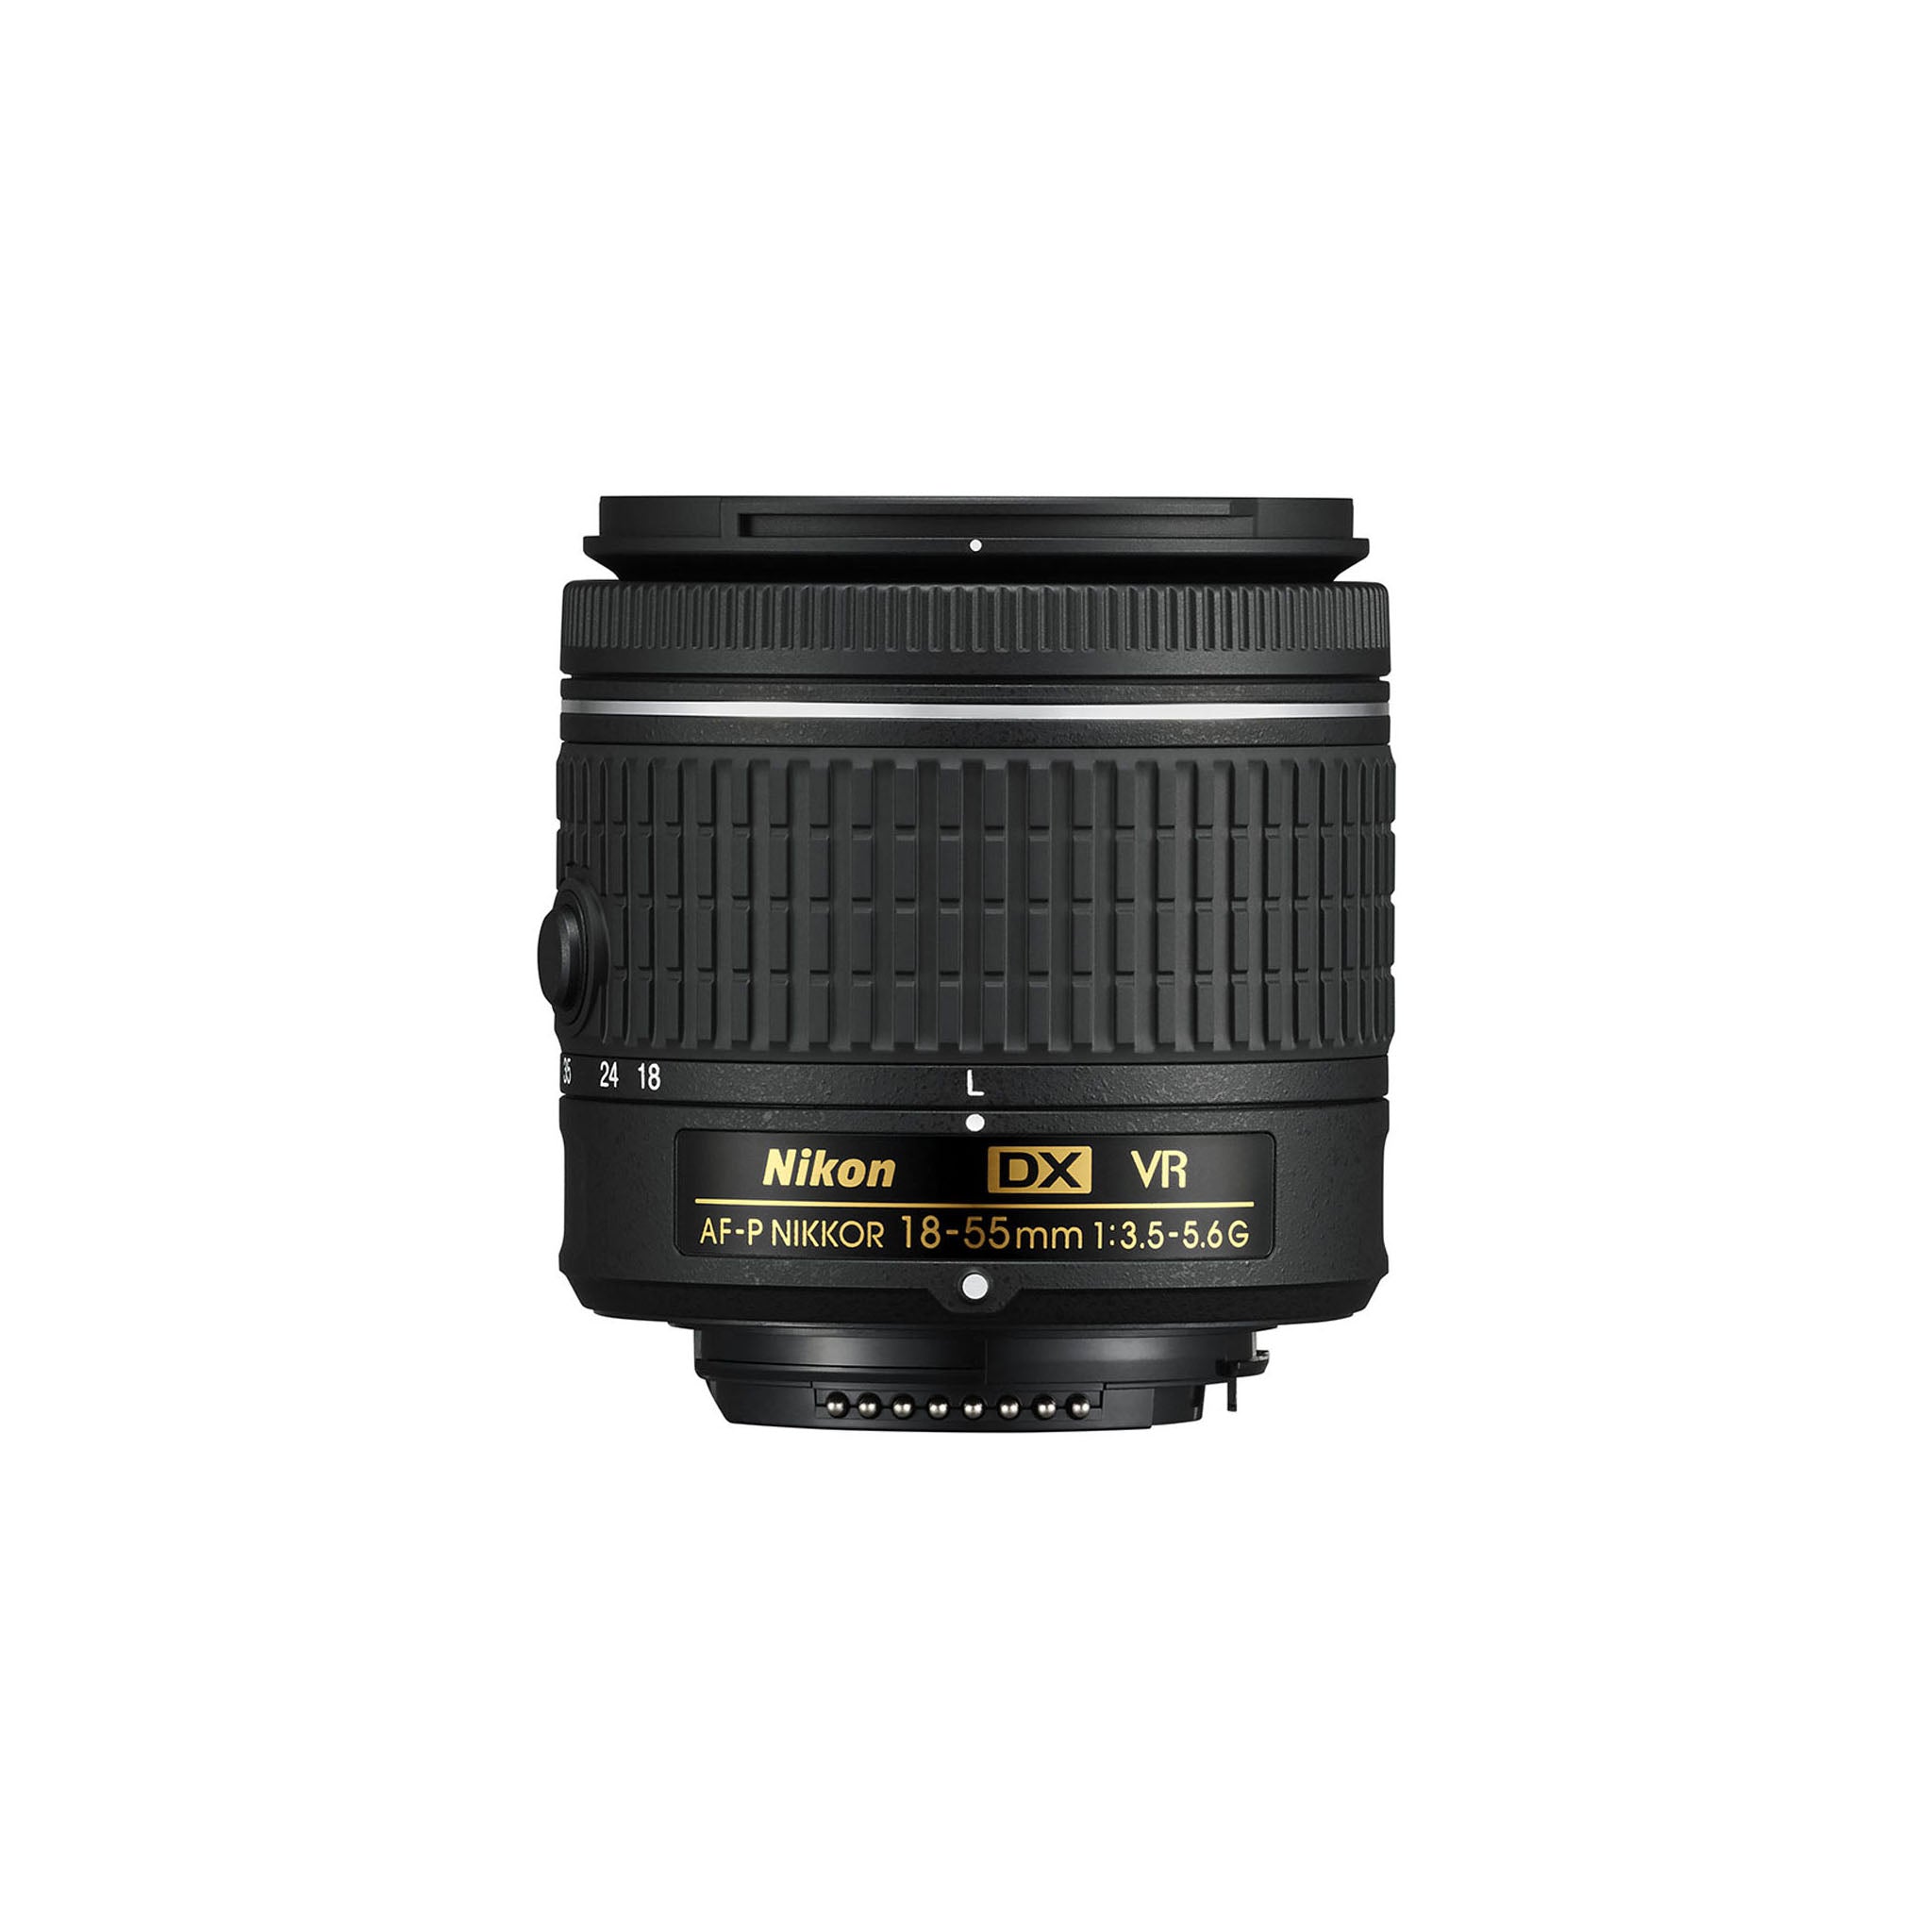 Nikon AF-P 18-55mm F3.5-5.6G VR DX Lens